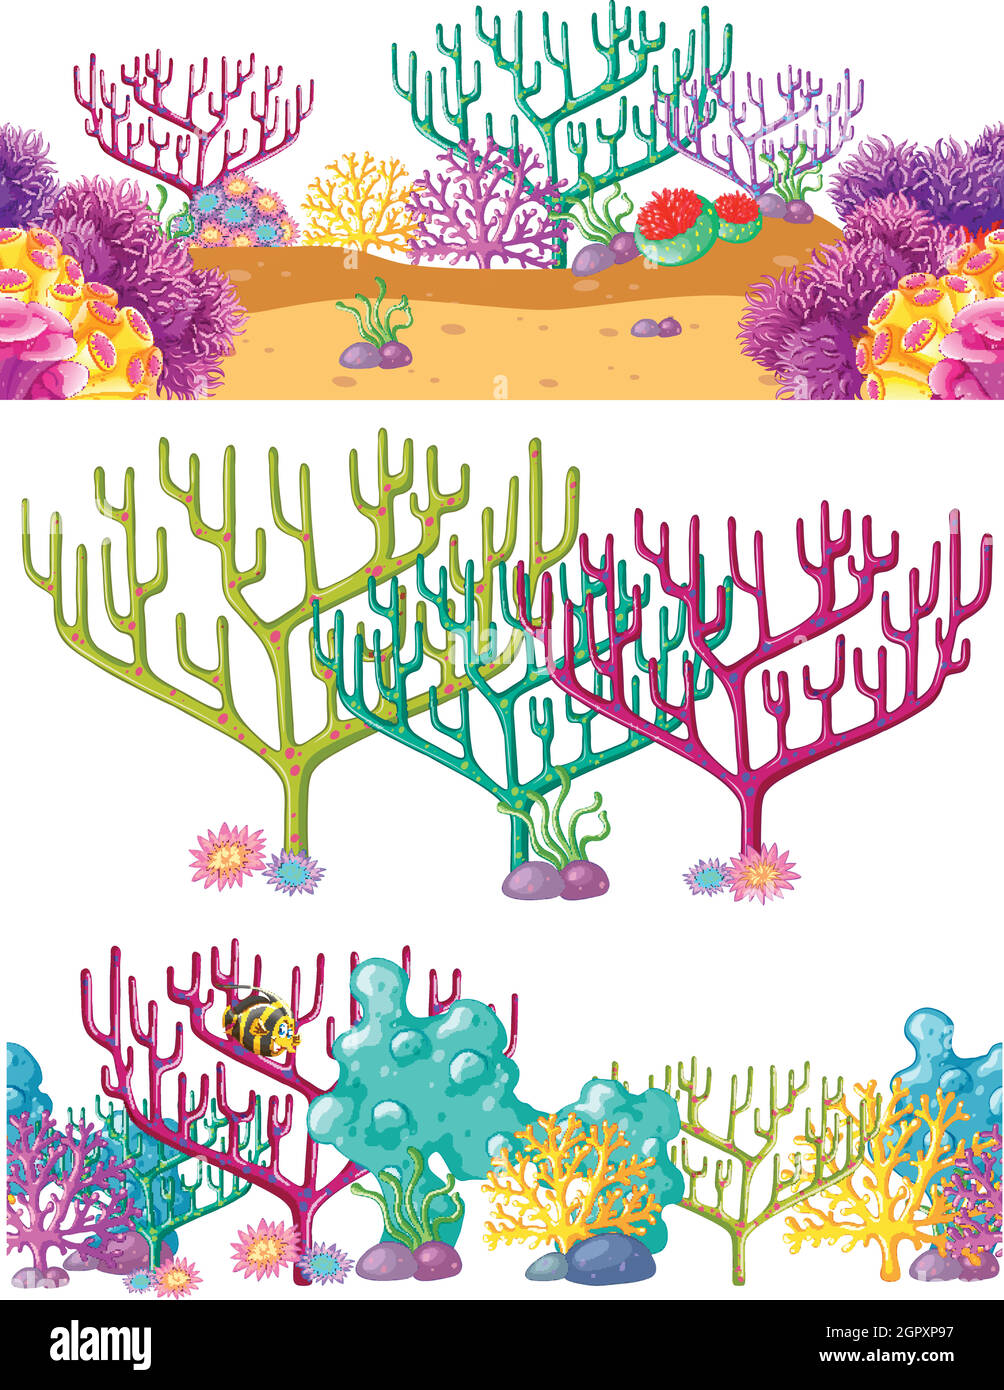 Tre scene con barriera corallina subacquea Illustrazione Vettoriale